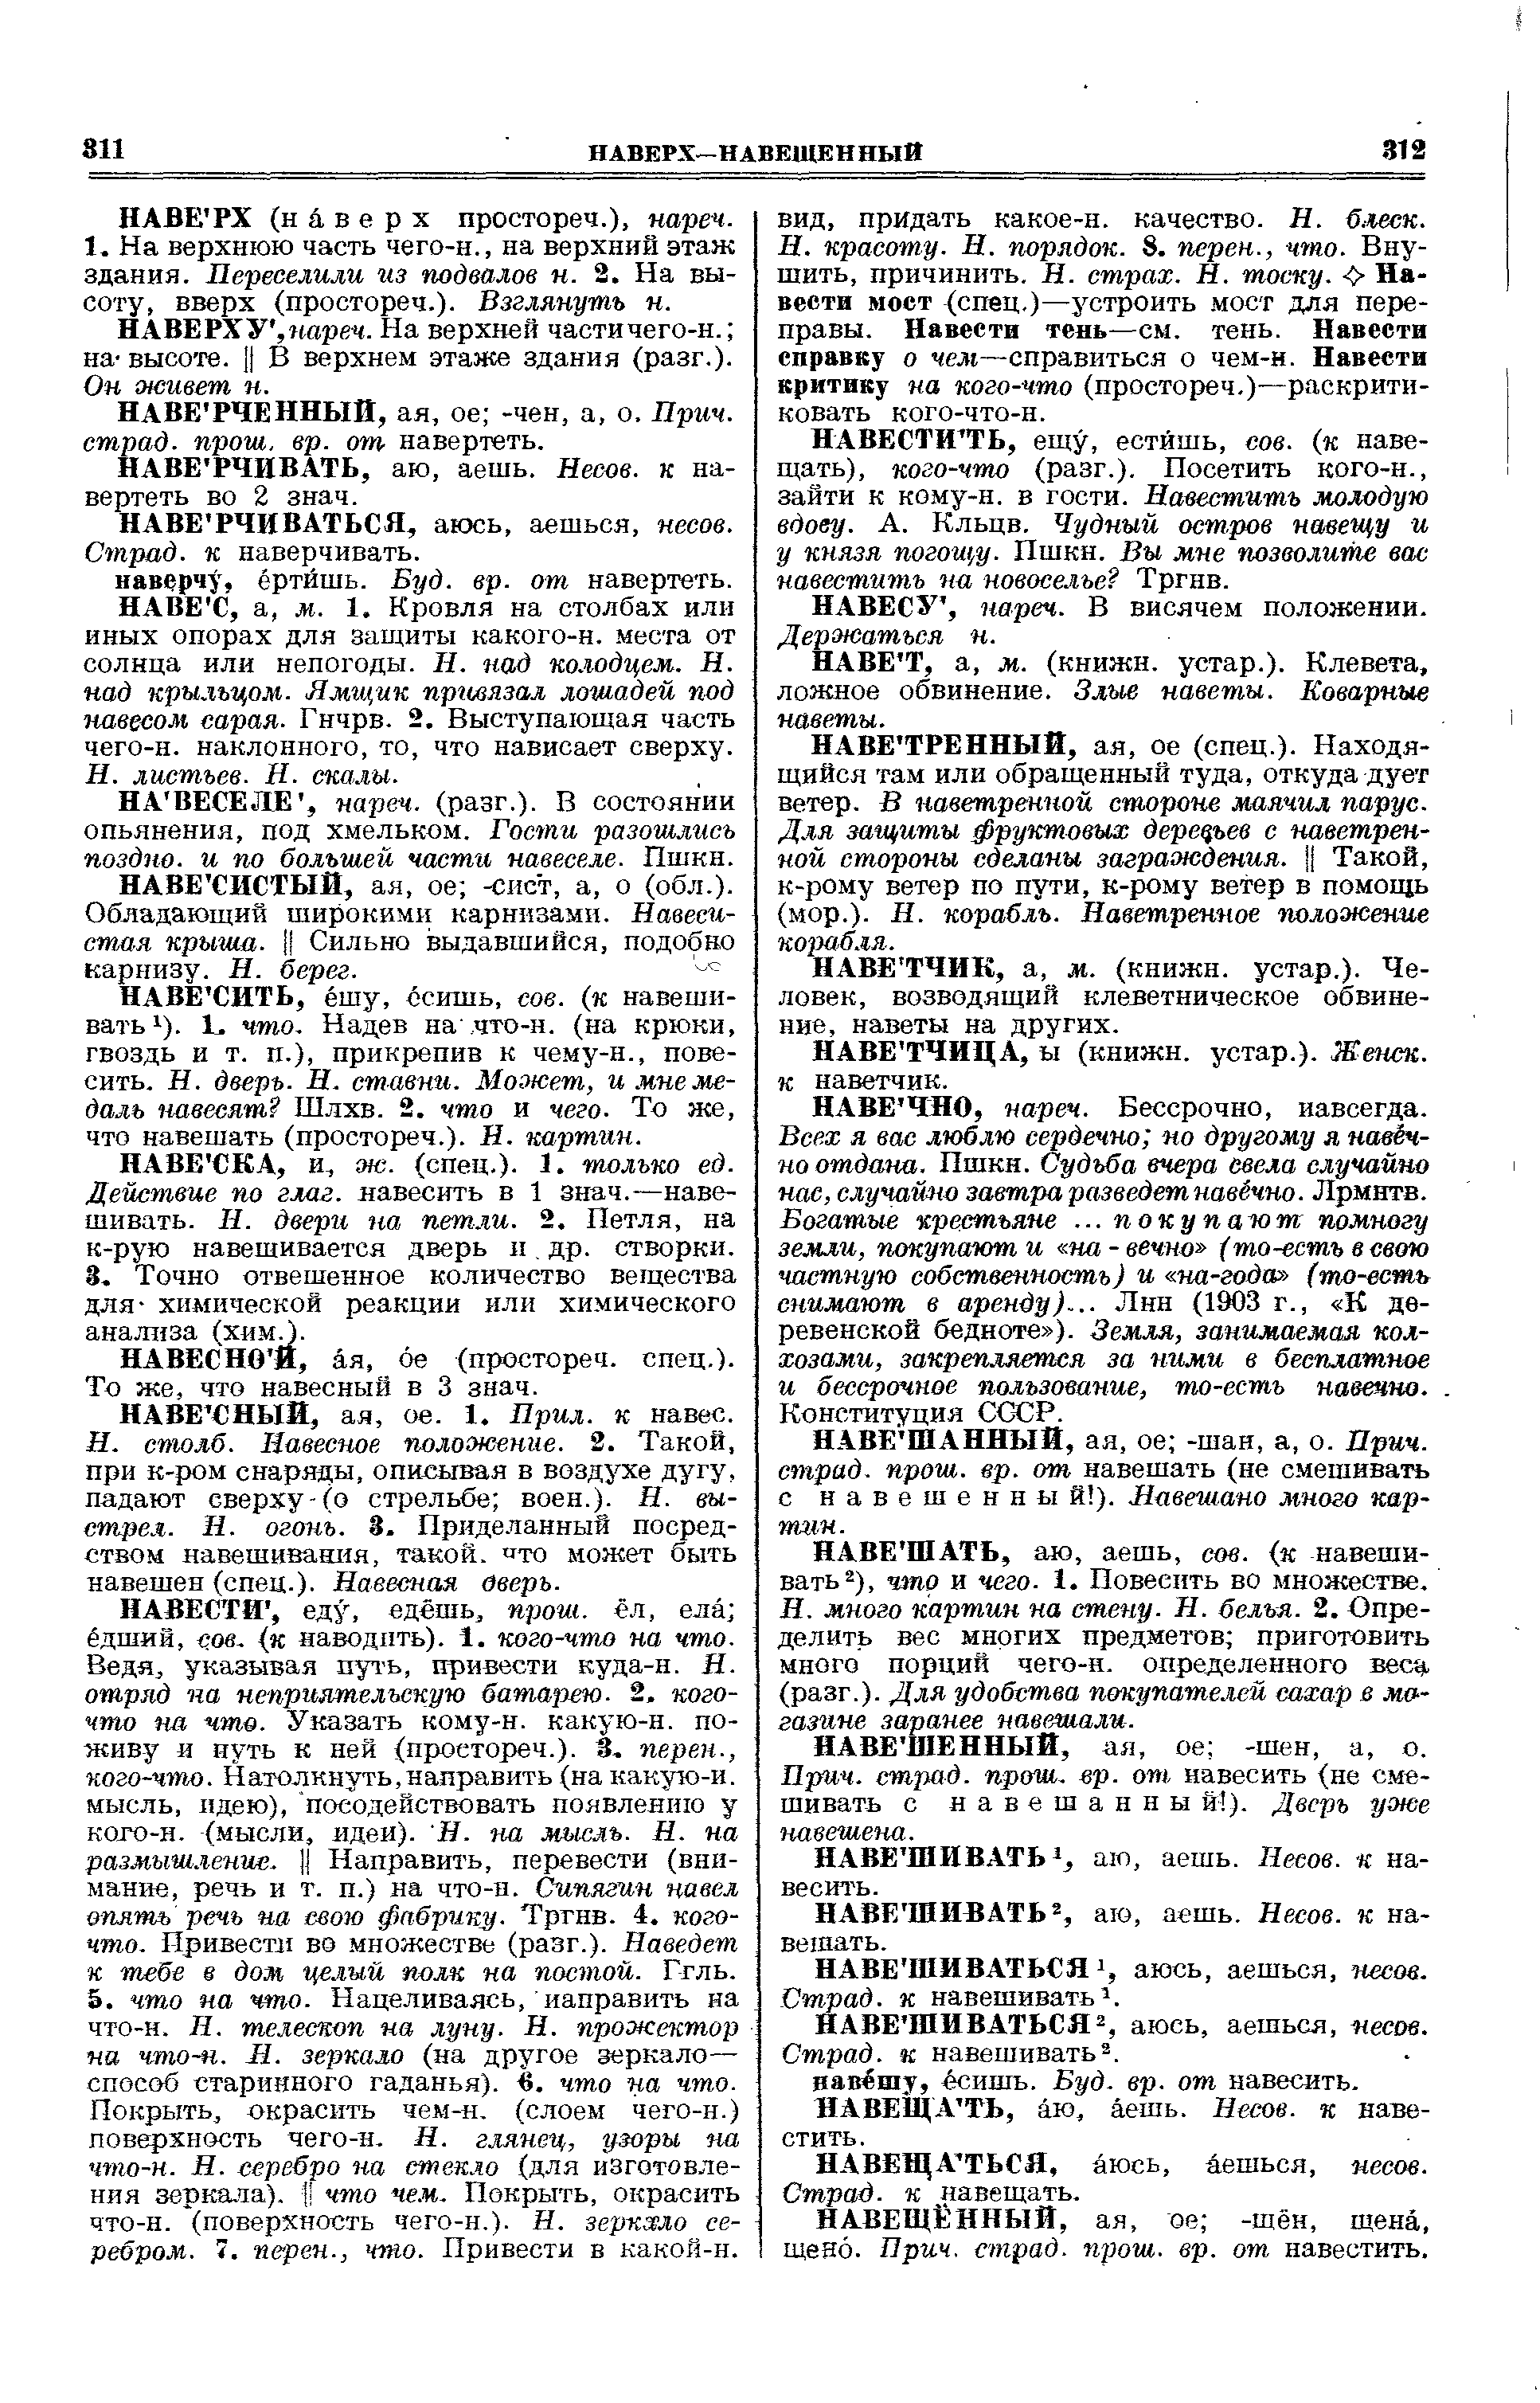 Фотокопия pdf / скан страницы 156 толкового словаря Ушакова (том 2)